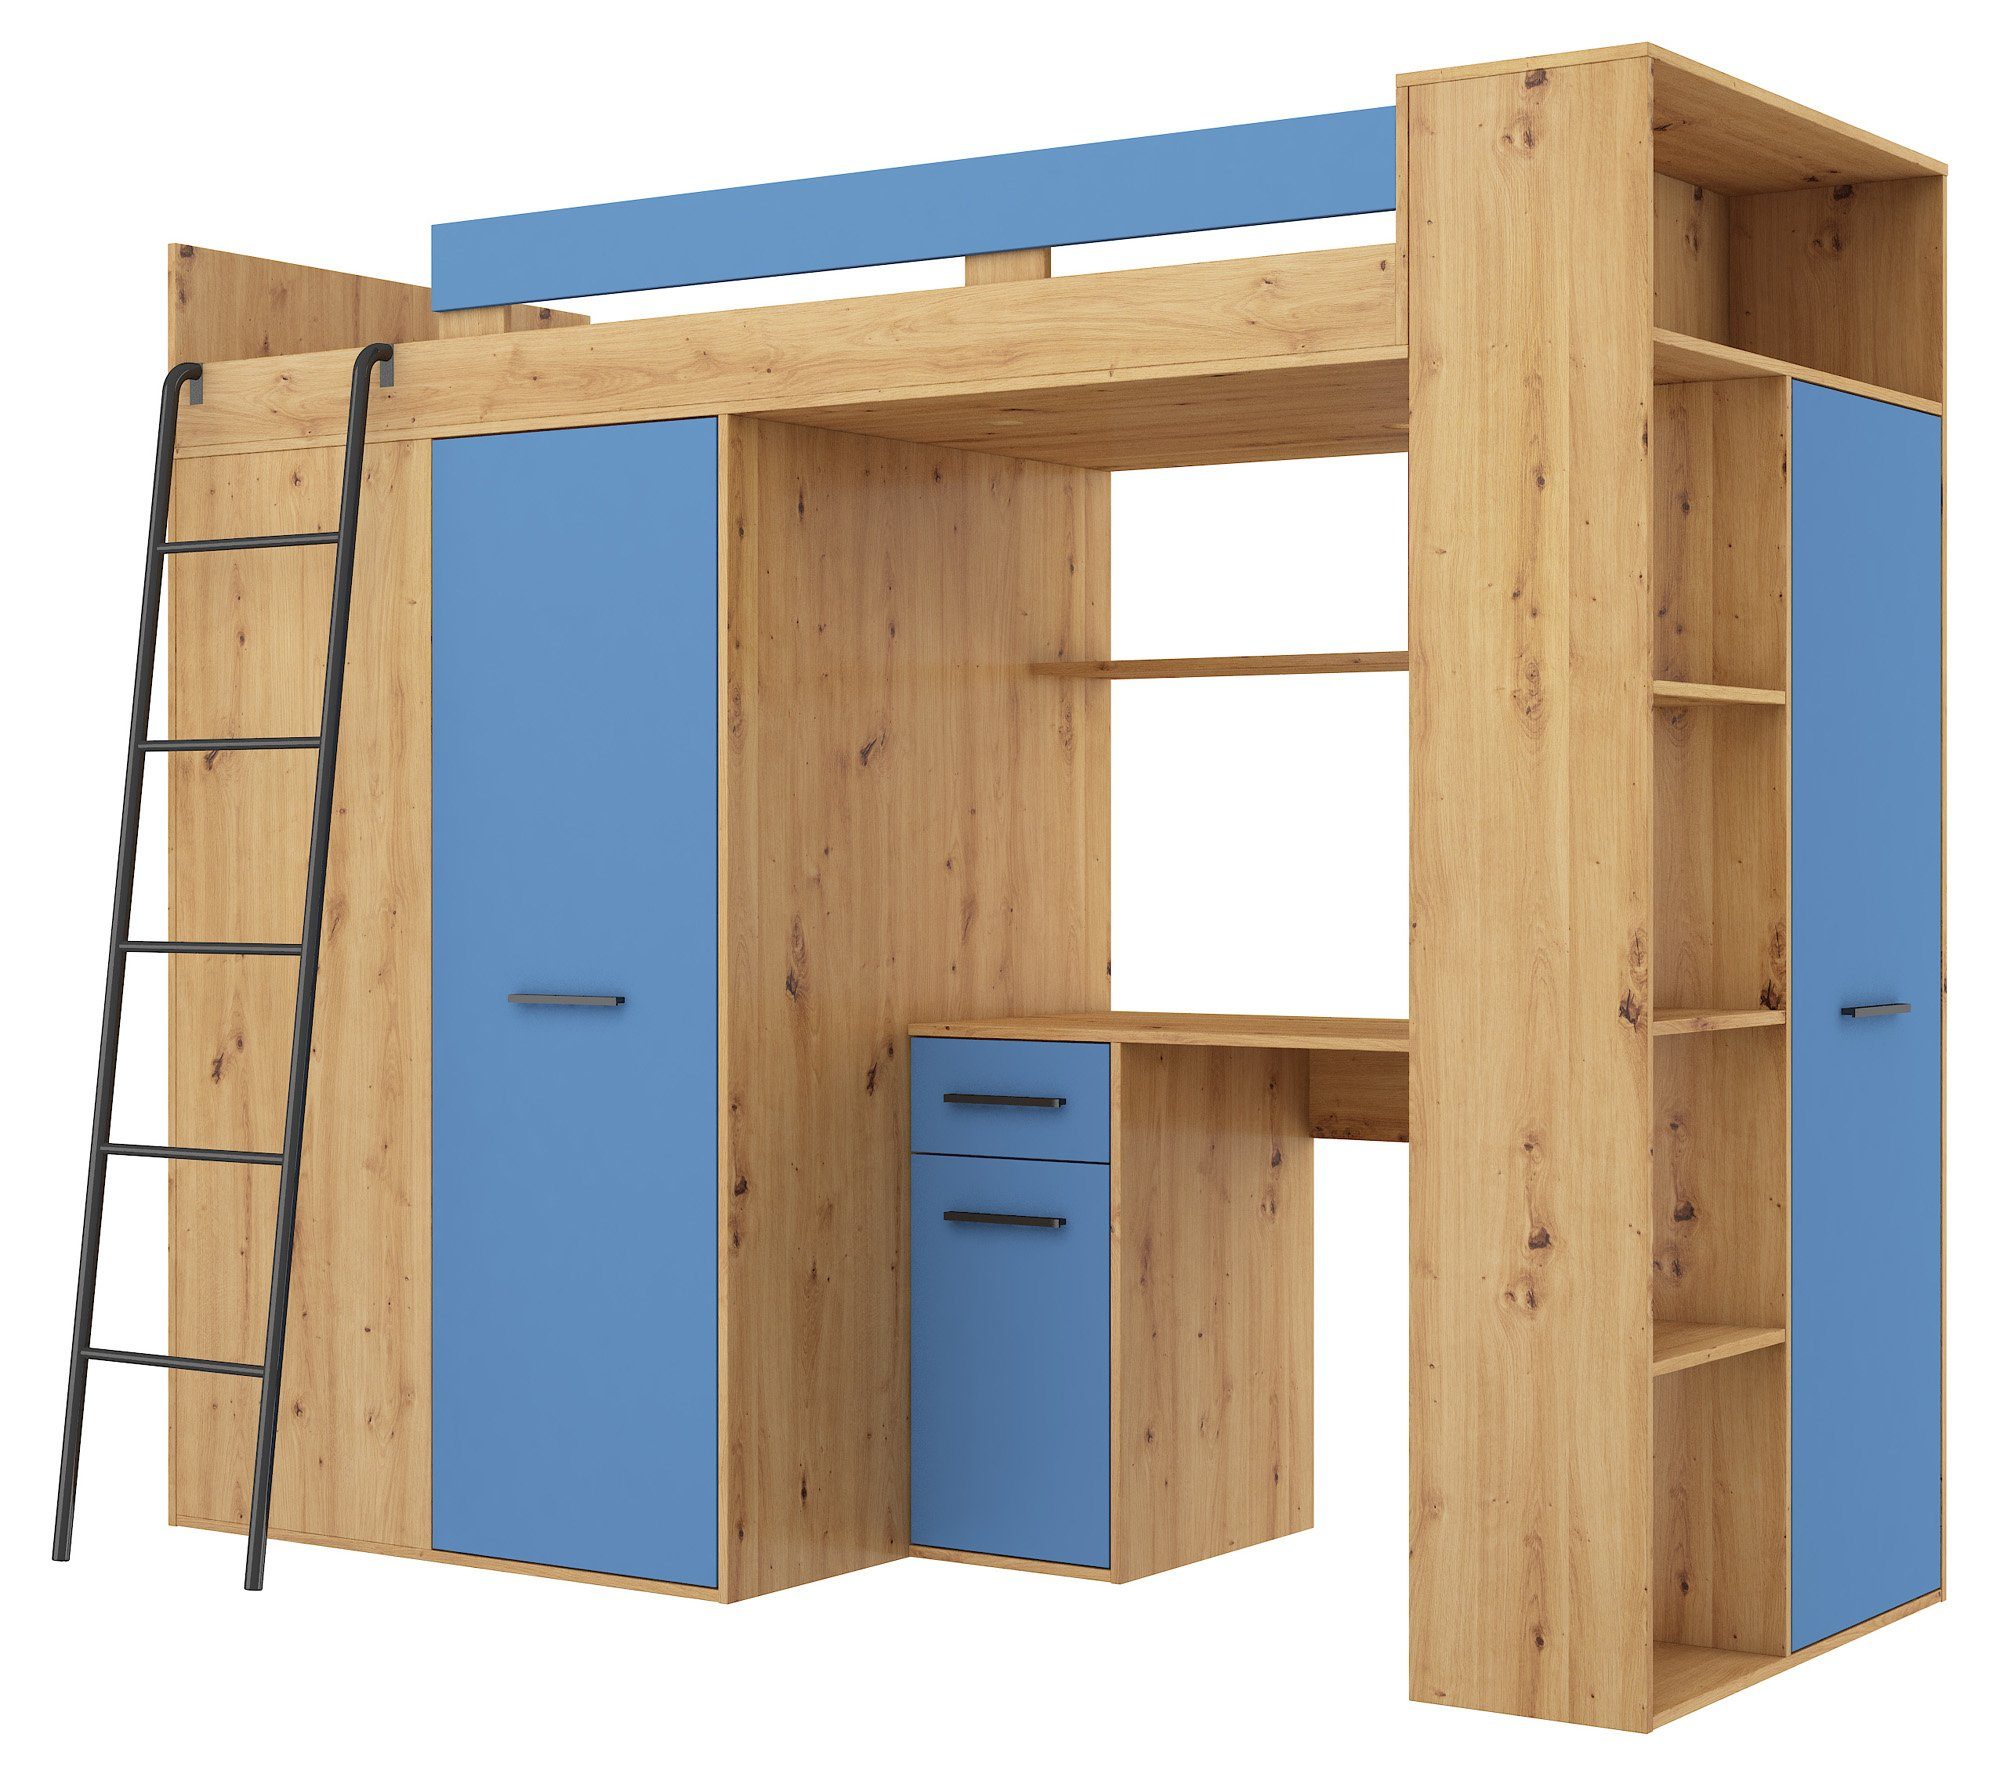 Artisan Himmelblau Schränke, integrierte Breite Schreibtisch, Hochbett Spiegel Hochbett Vinci 236cm, Regal, Eiche Domando und